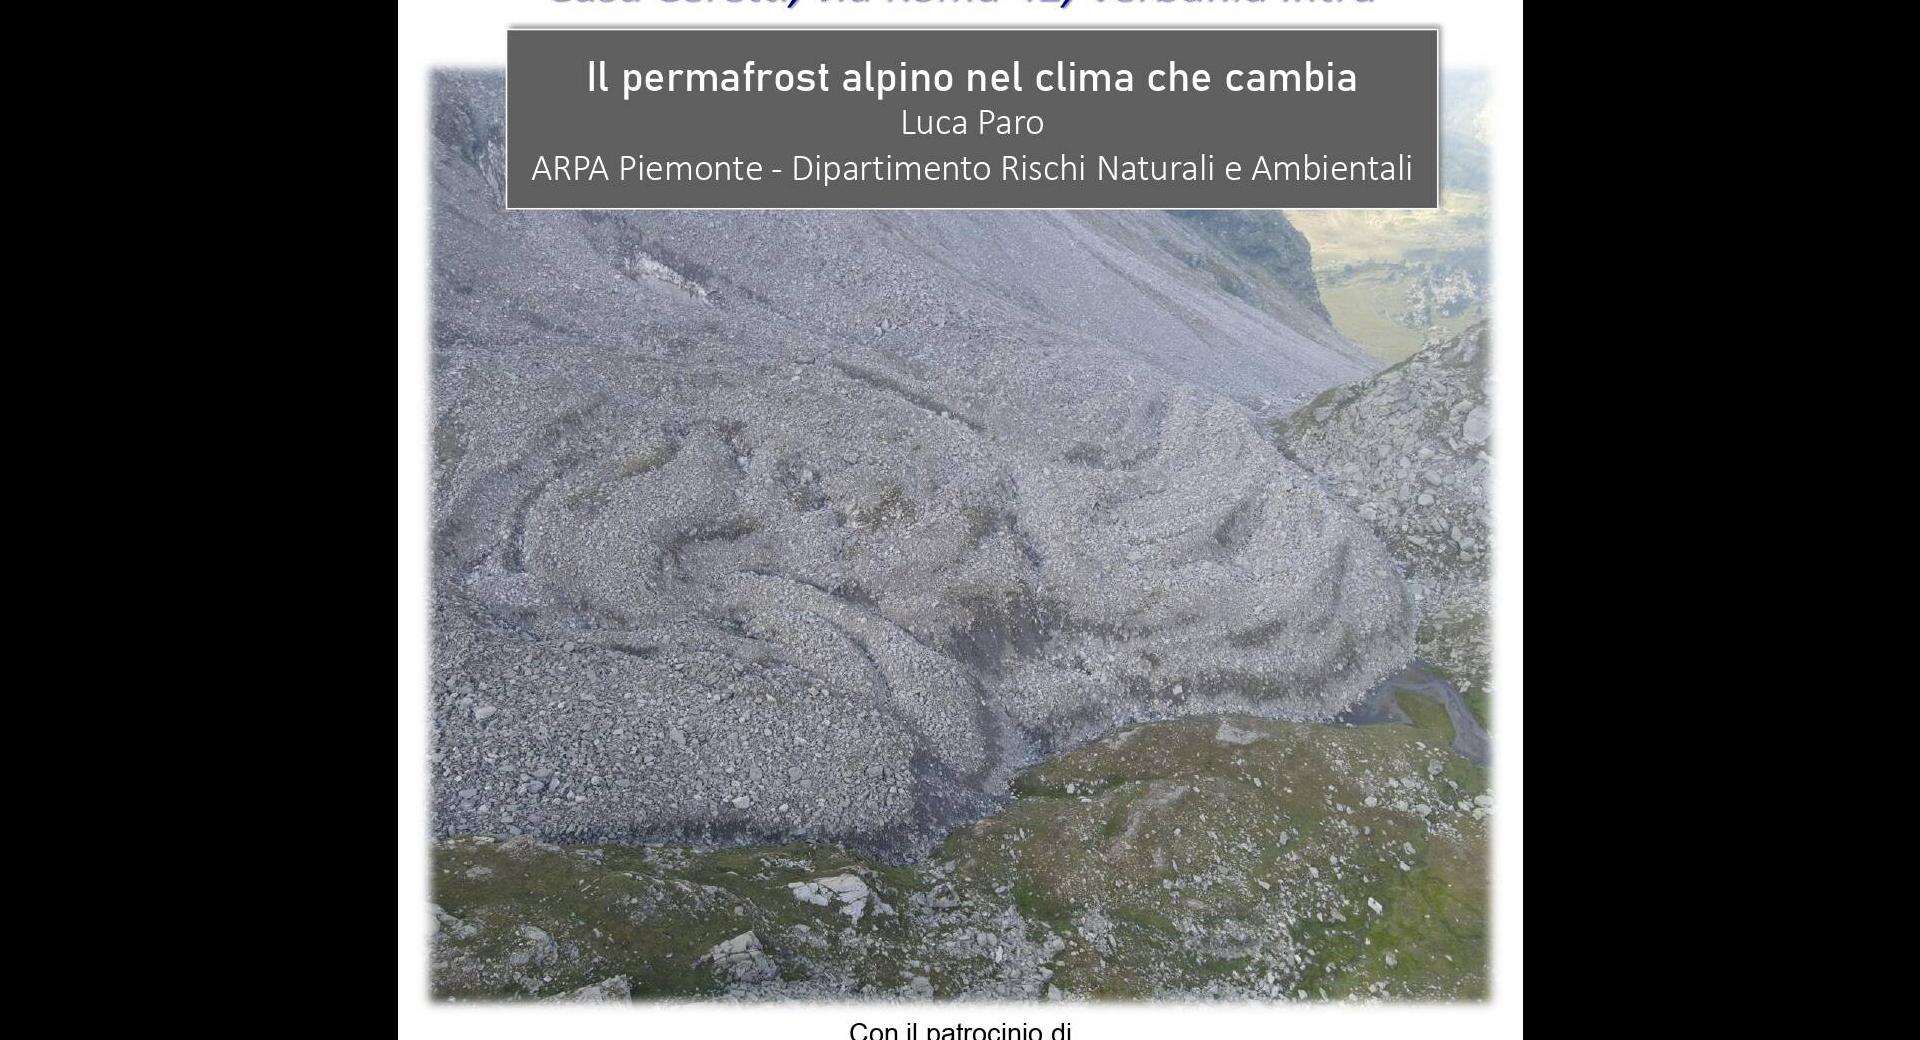 2023.03.31-arpa-piemonte-cnr-irsa-permafrost-alpino-nel-clima-che-cambia-locandina_page-0001